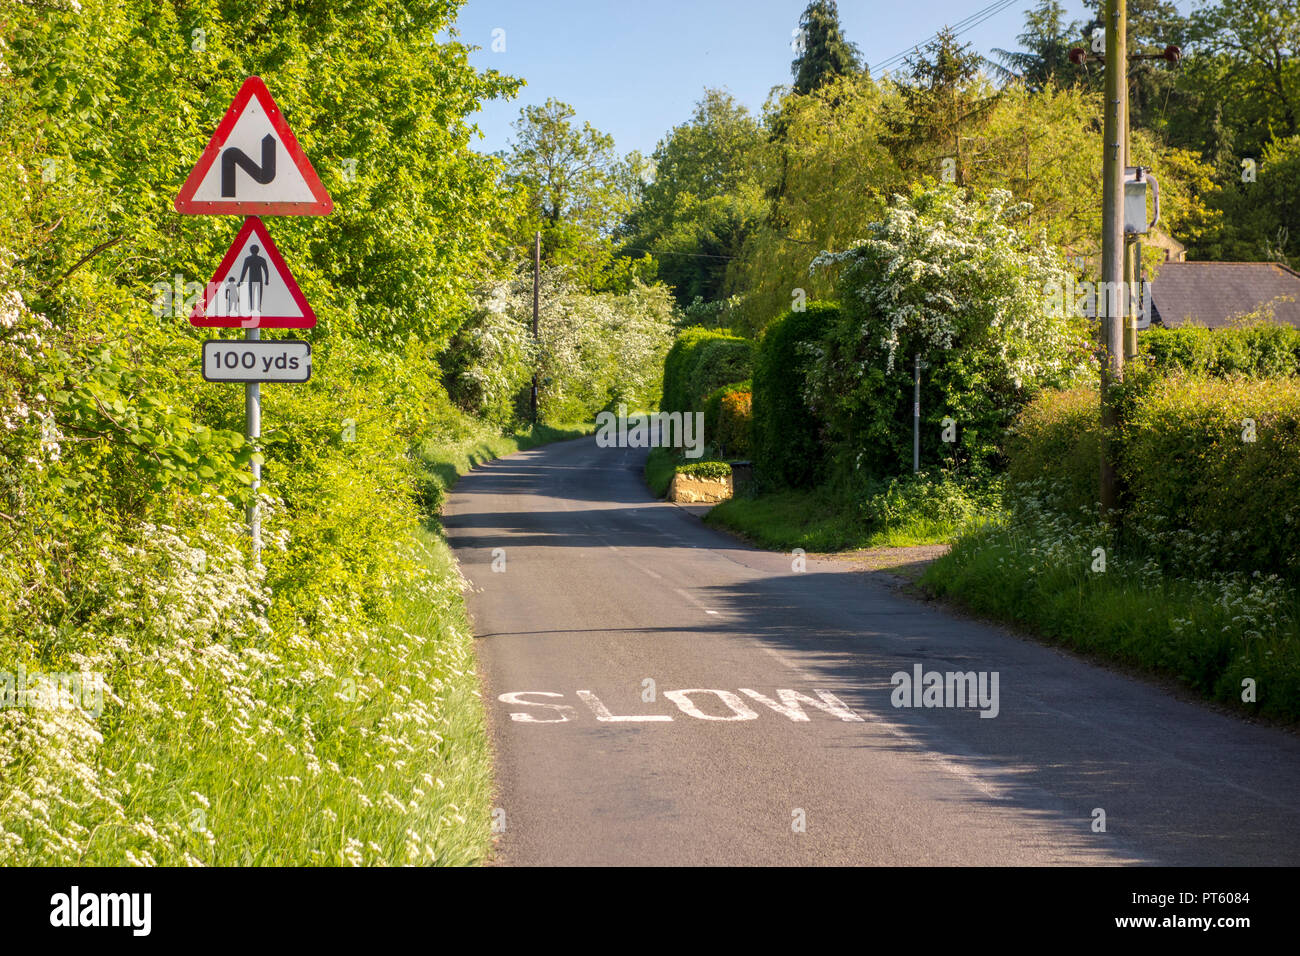 Le triangle de signalisation routière pour les virages et les piétons avec de lents signe sur un chemin de campagne britannique, Sharpenhoe, UK Banque D'Images